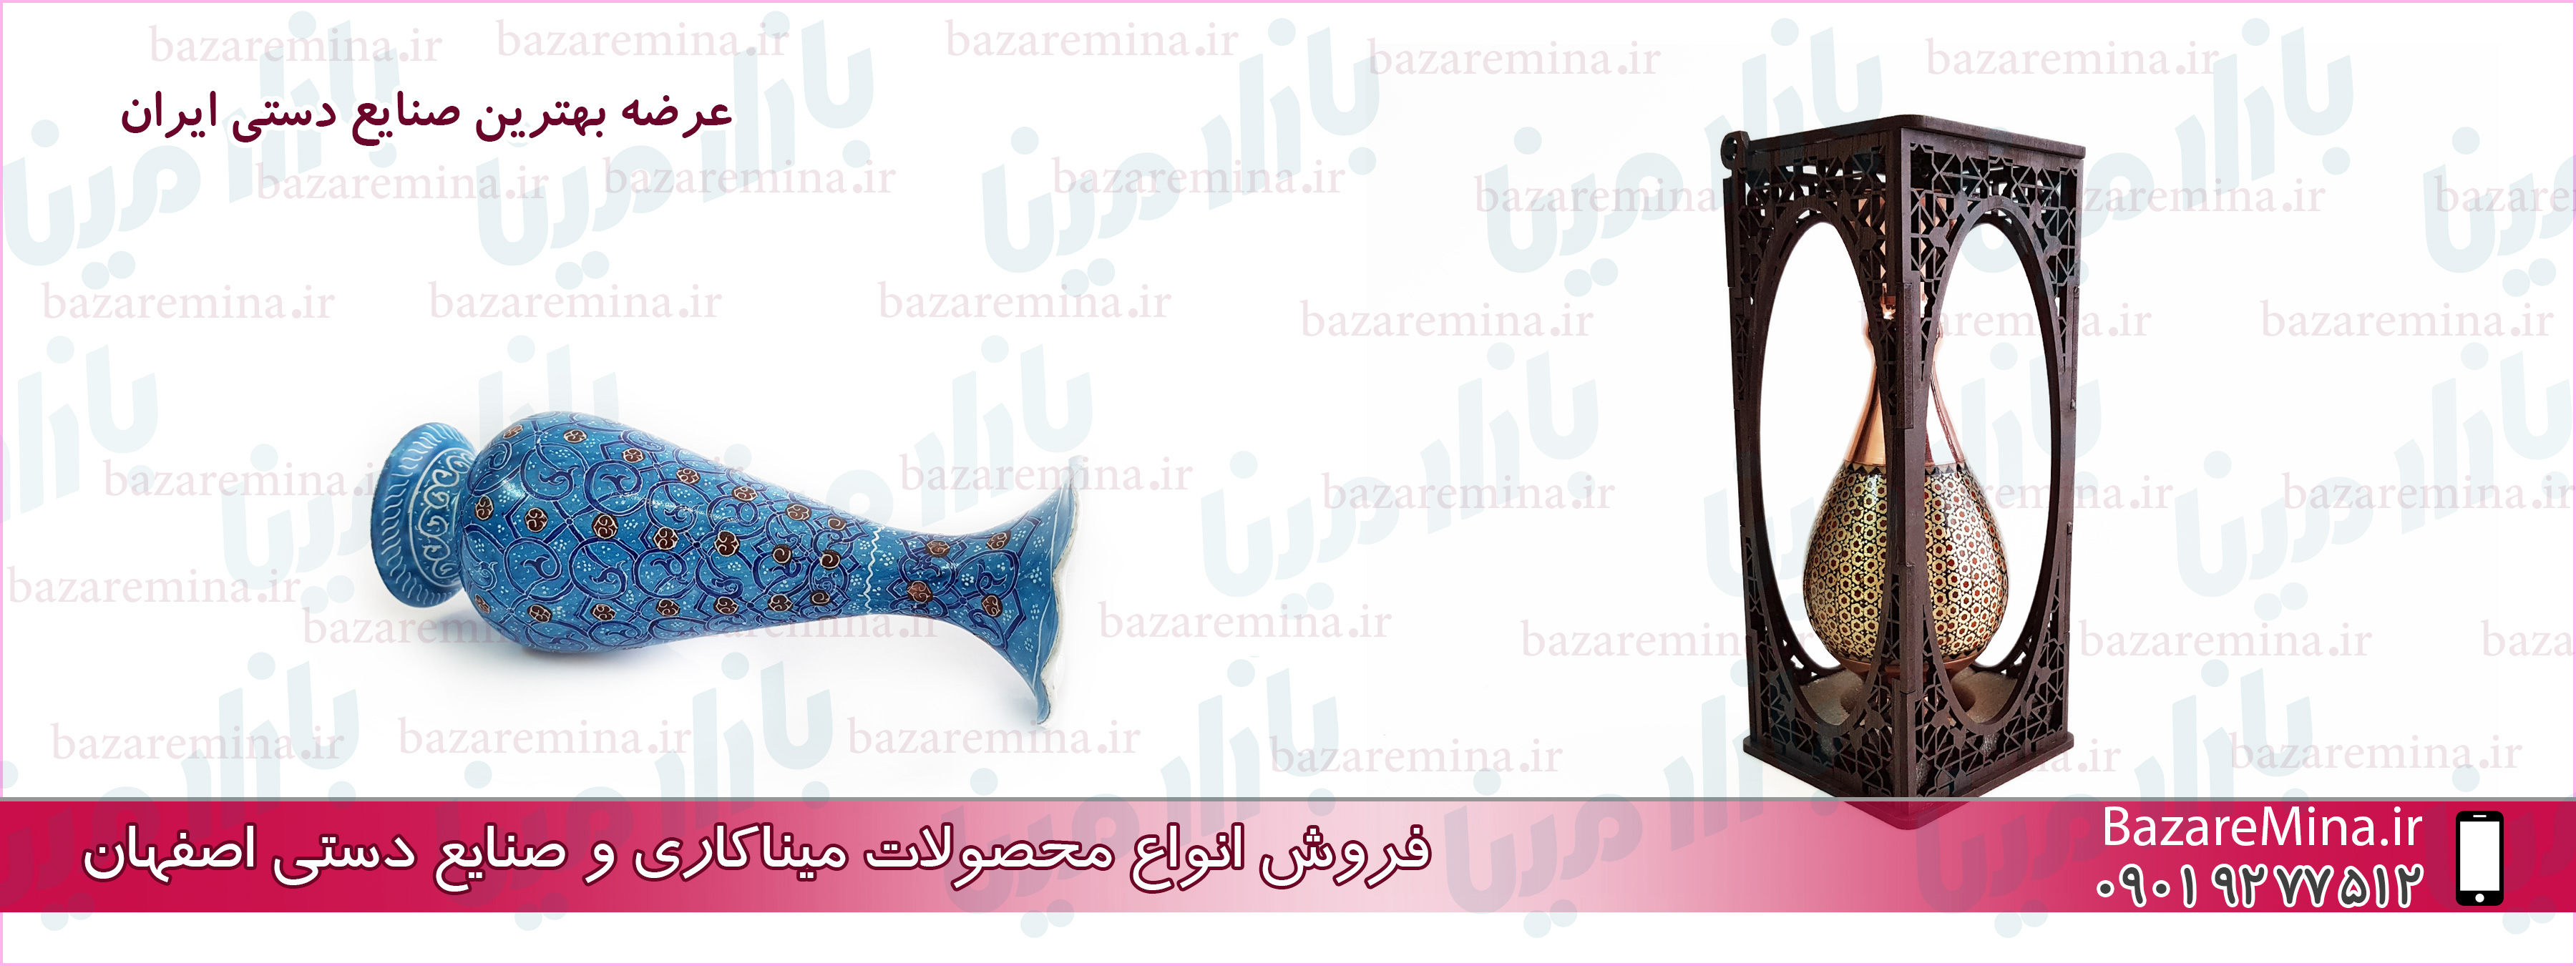 ظروف میناکاری شده اصفهان